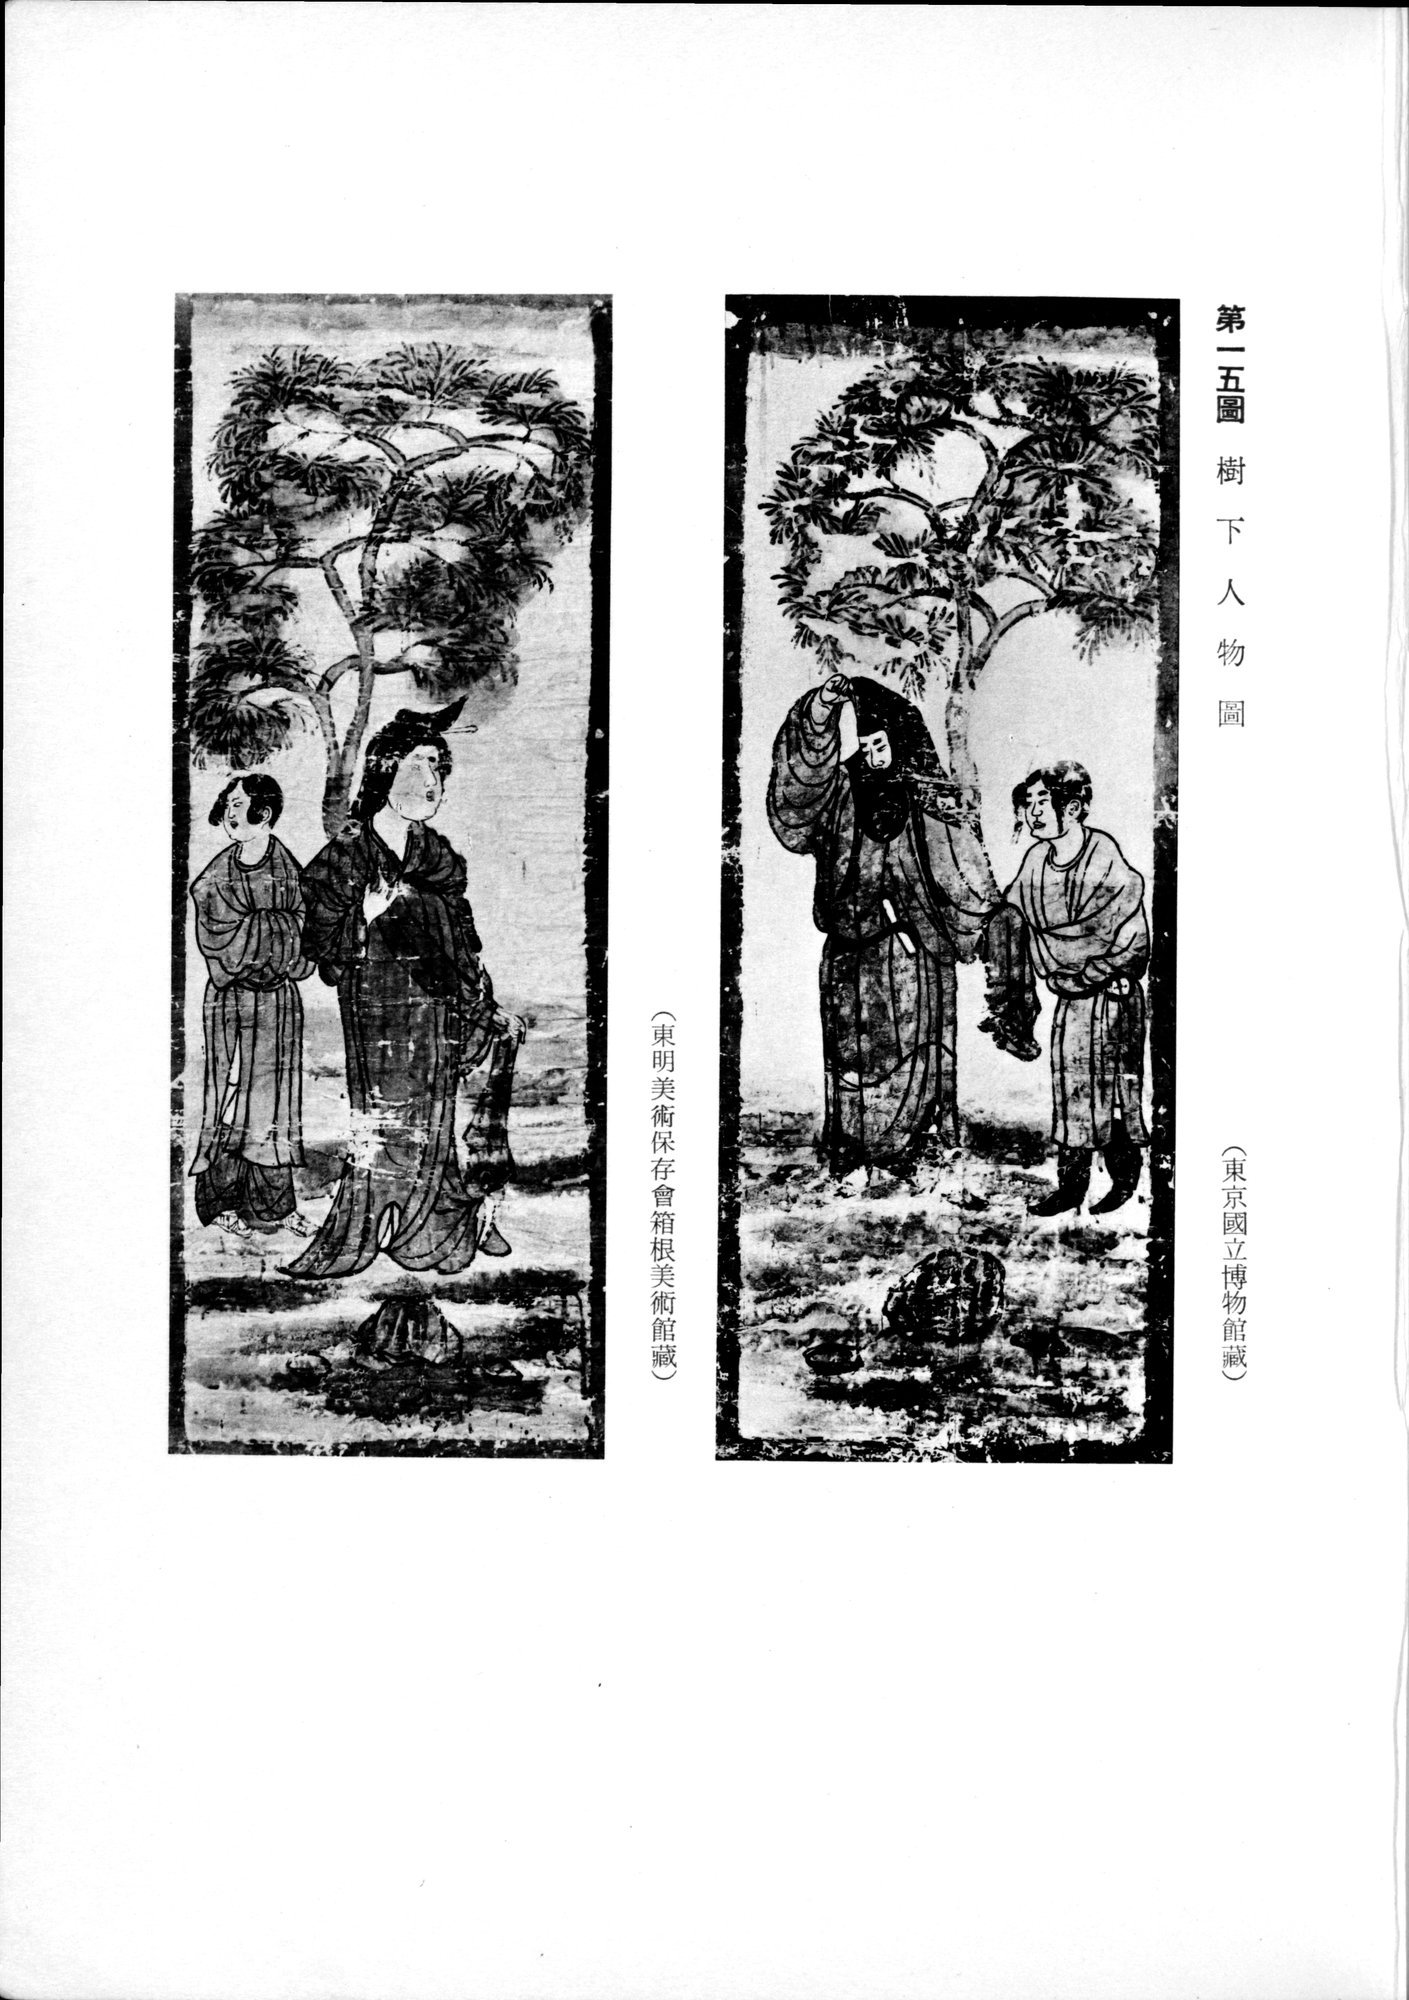 羽田博士史学論文集 : vol.2 / 35 ページ（白黒高解像度画像）